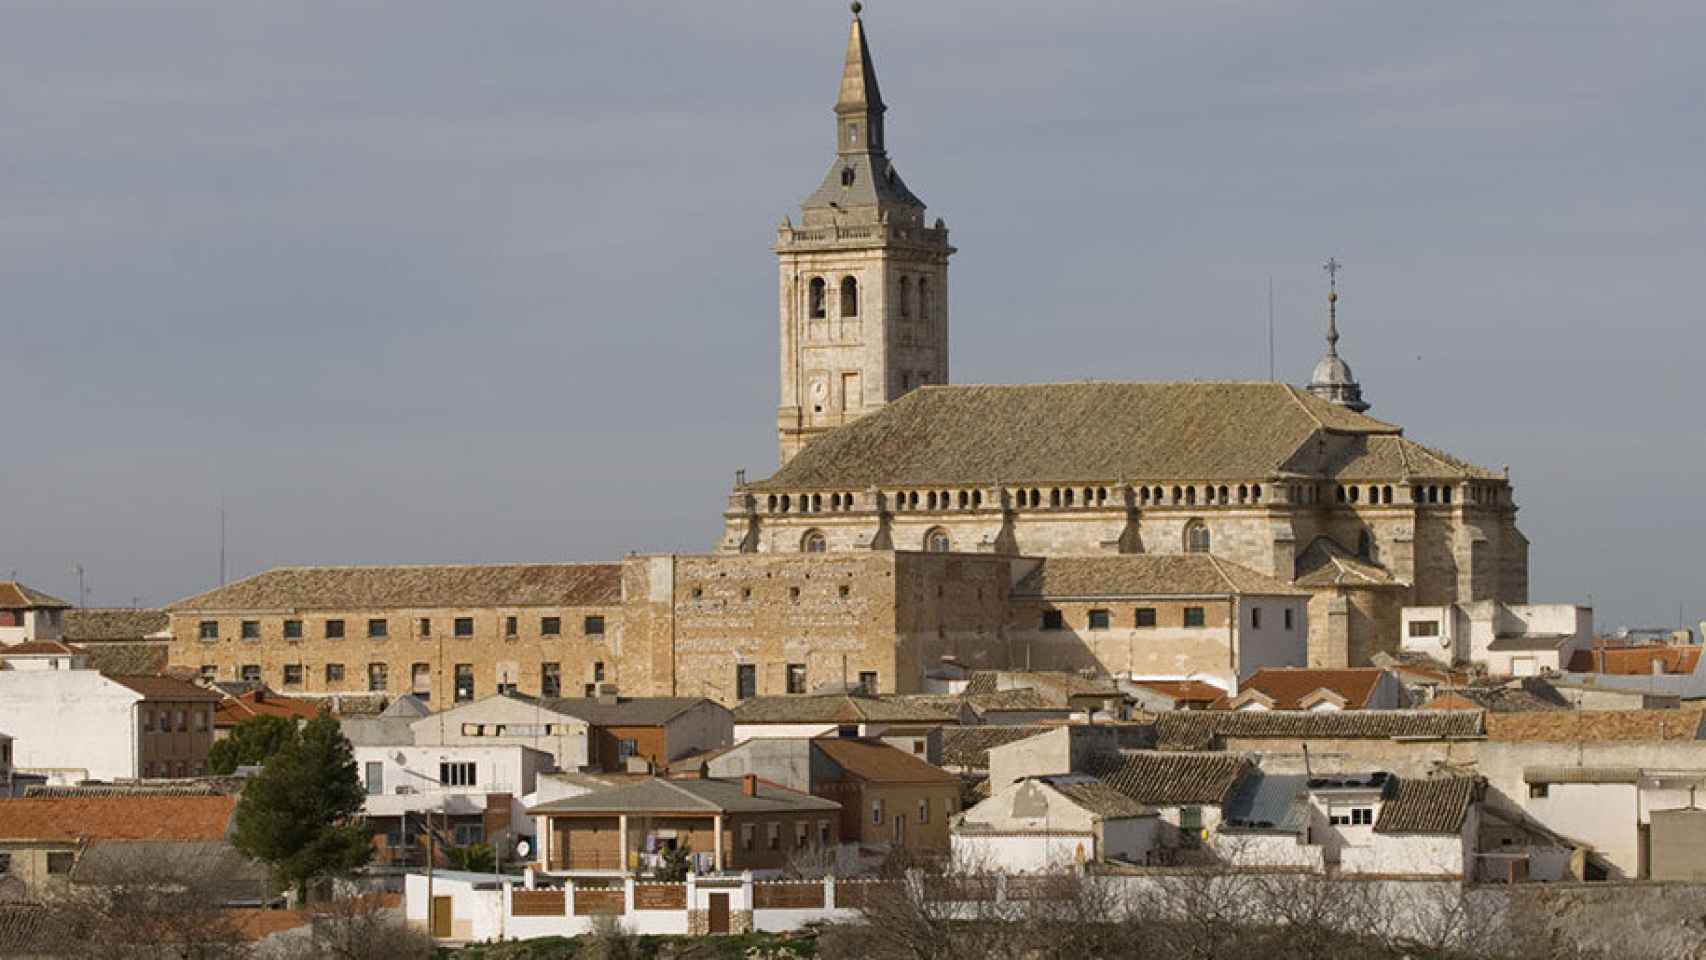 Conoce el pueblo medieval cerca de Madrid lleno de encanto: tiene una de las joyas arquitectónicas más importantes de España.